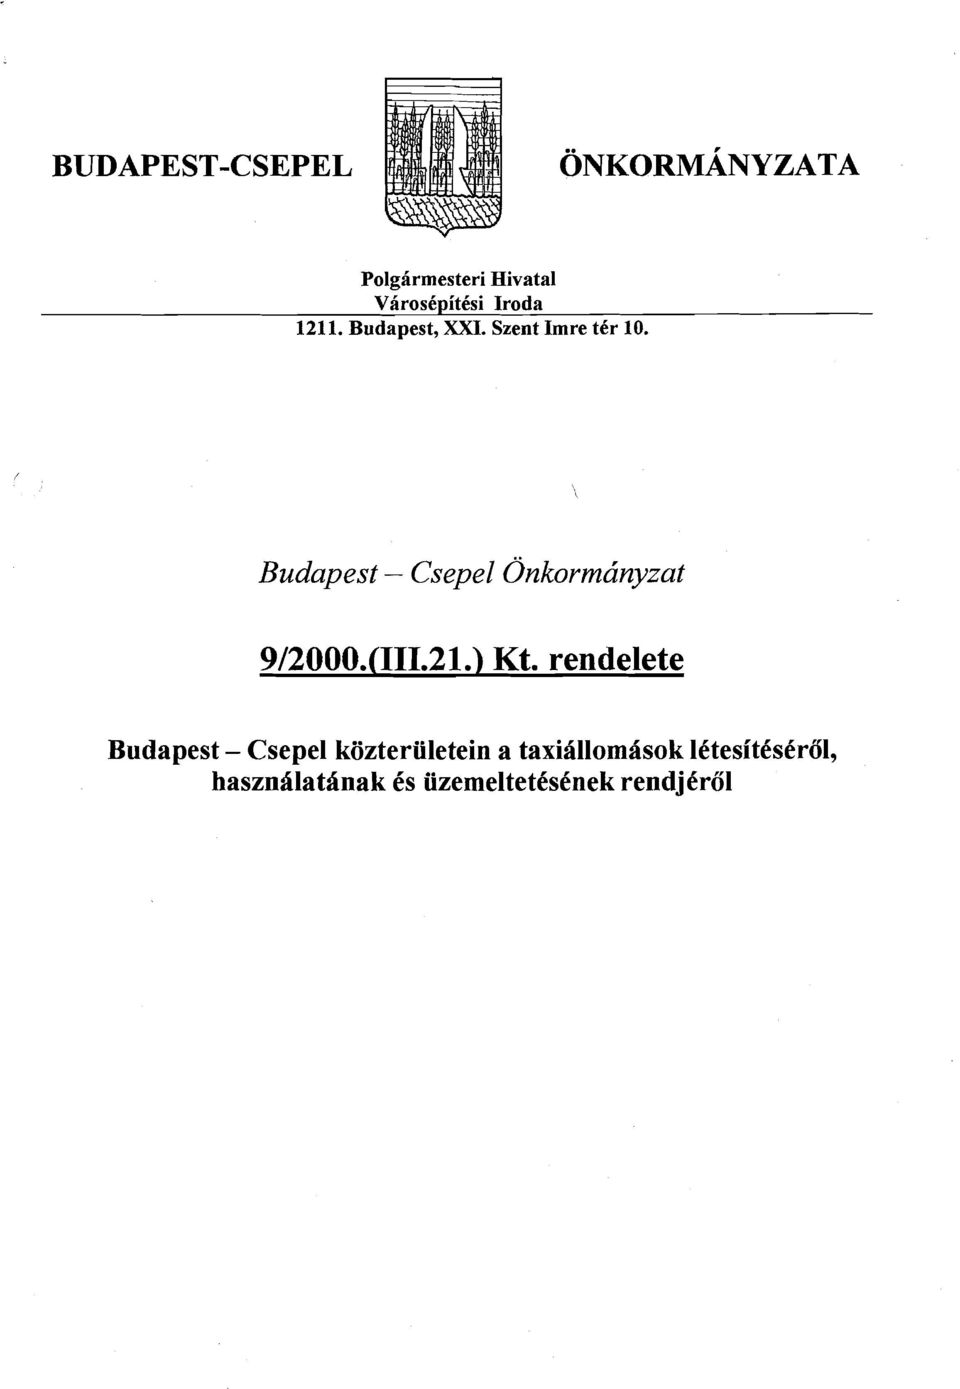 Budapest - Csepel Onkormdnyzat 9/2000.(111.21.) Kt.